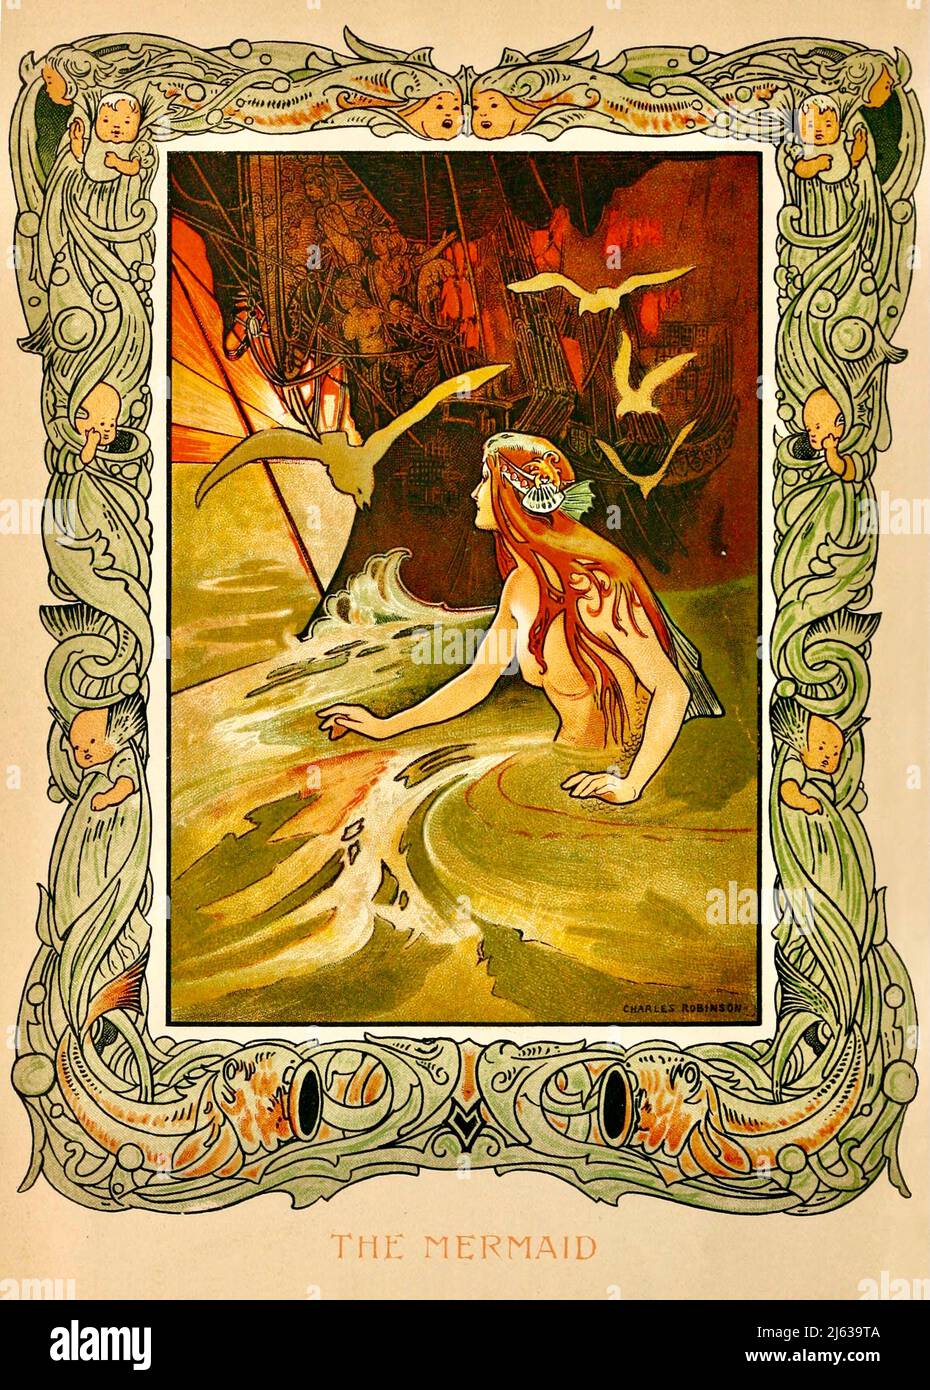 La Sirène. (Illustration de Charles Robinson dans contes de fées de Hans Christian Andersen) - 1899. Banque D'Images